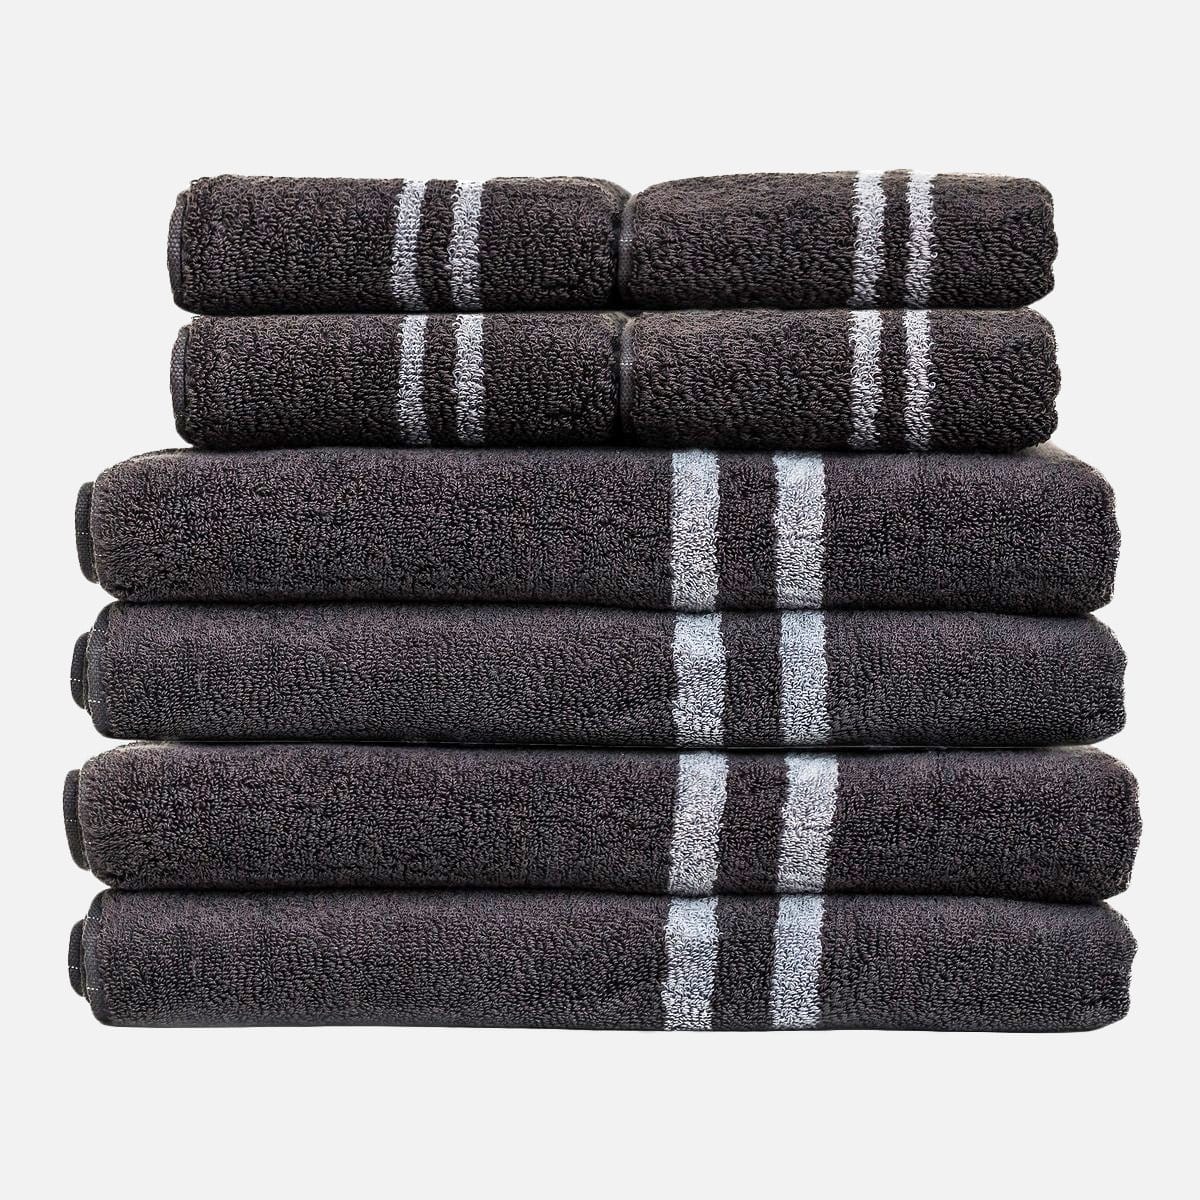 Mizu Antibacterial Towels - Silver Infused Towels - 4x Smart Towel Set